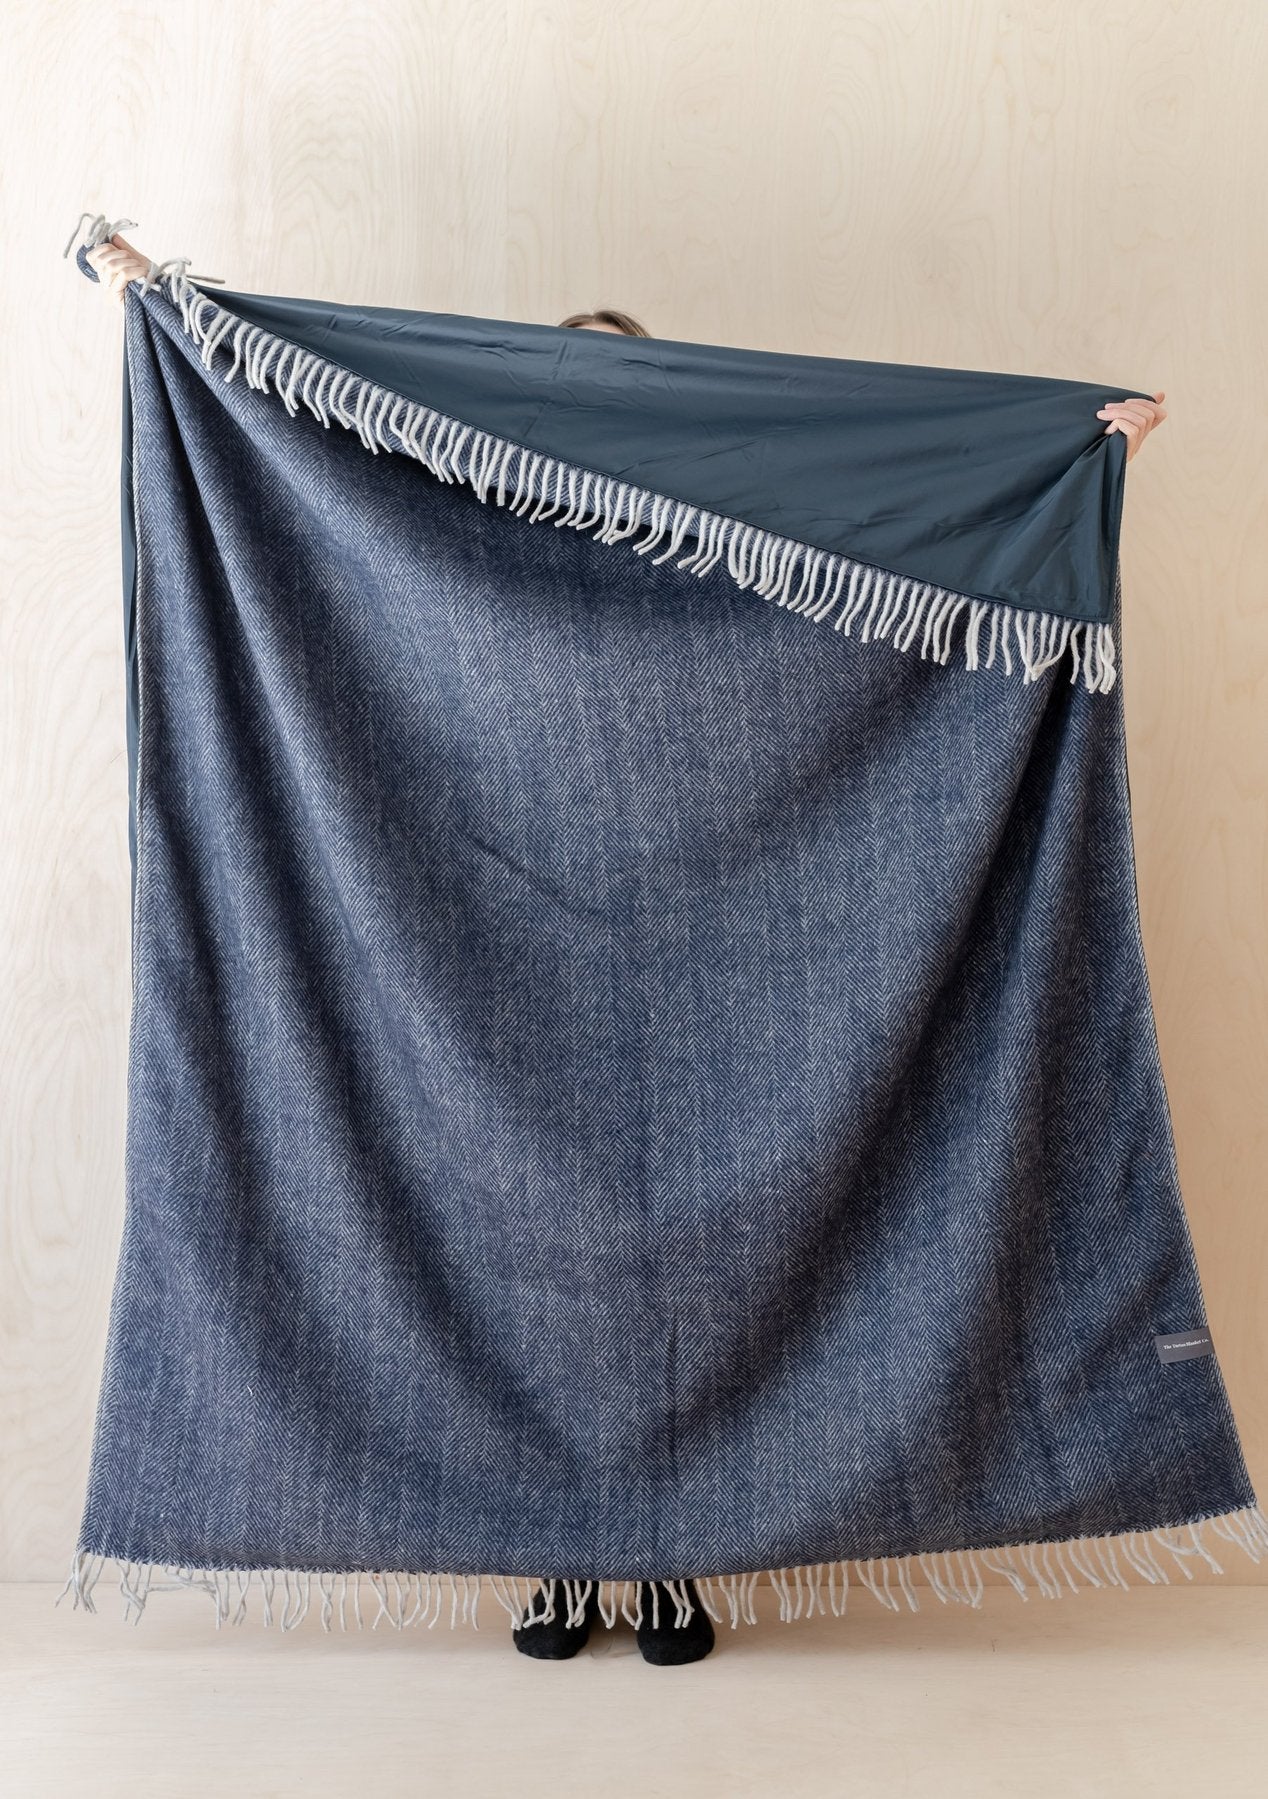 The Tartan Blanket Co. Recycled Wool Waterproof Picnic Blanket - Navy Herringbone